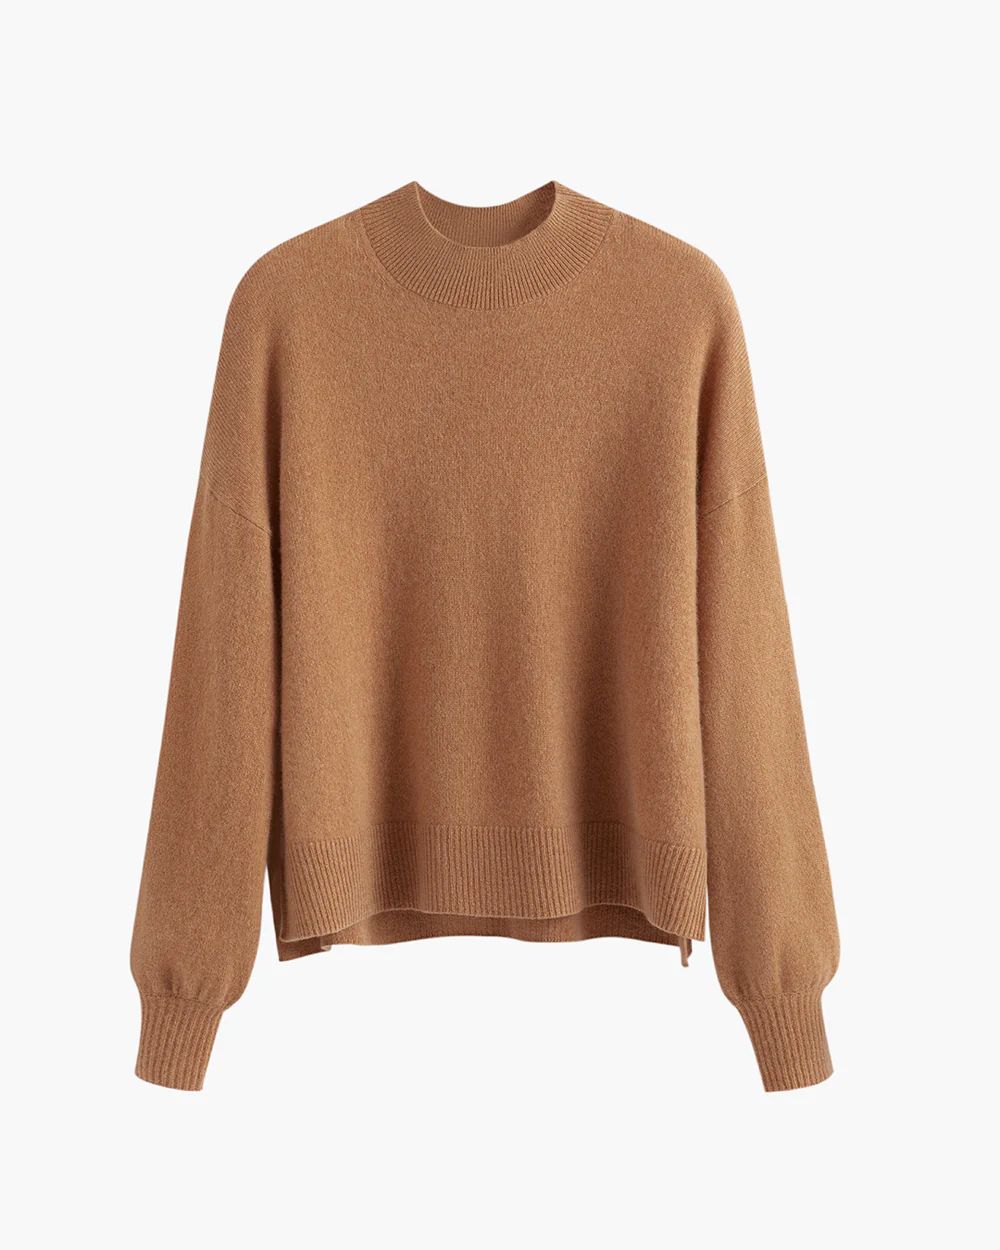 Single Origin Cashmere Cropped Sweater | Cuyana